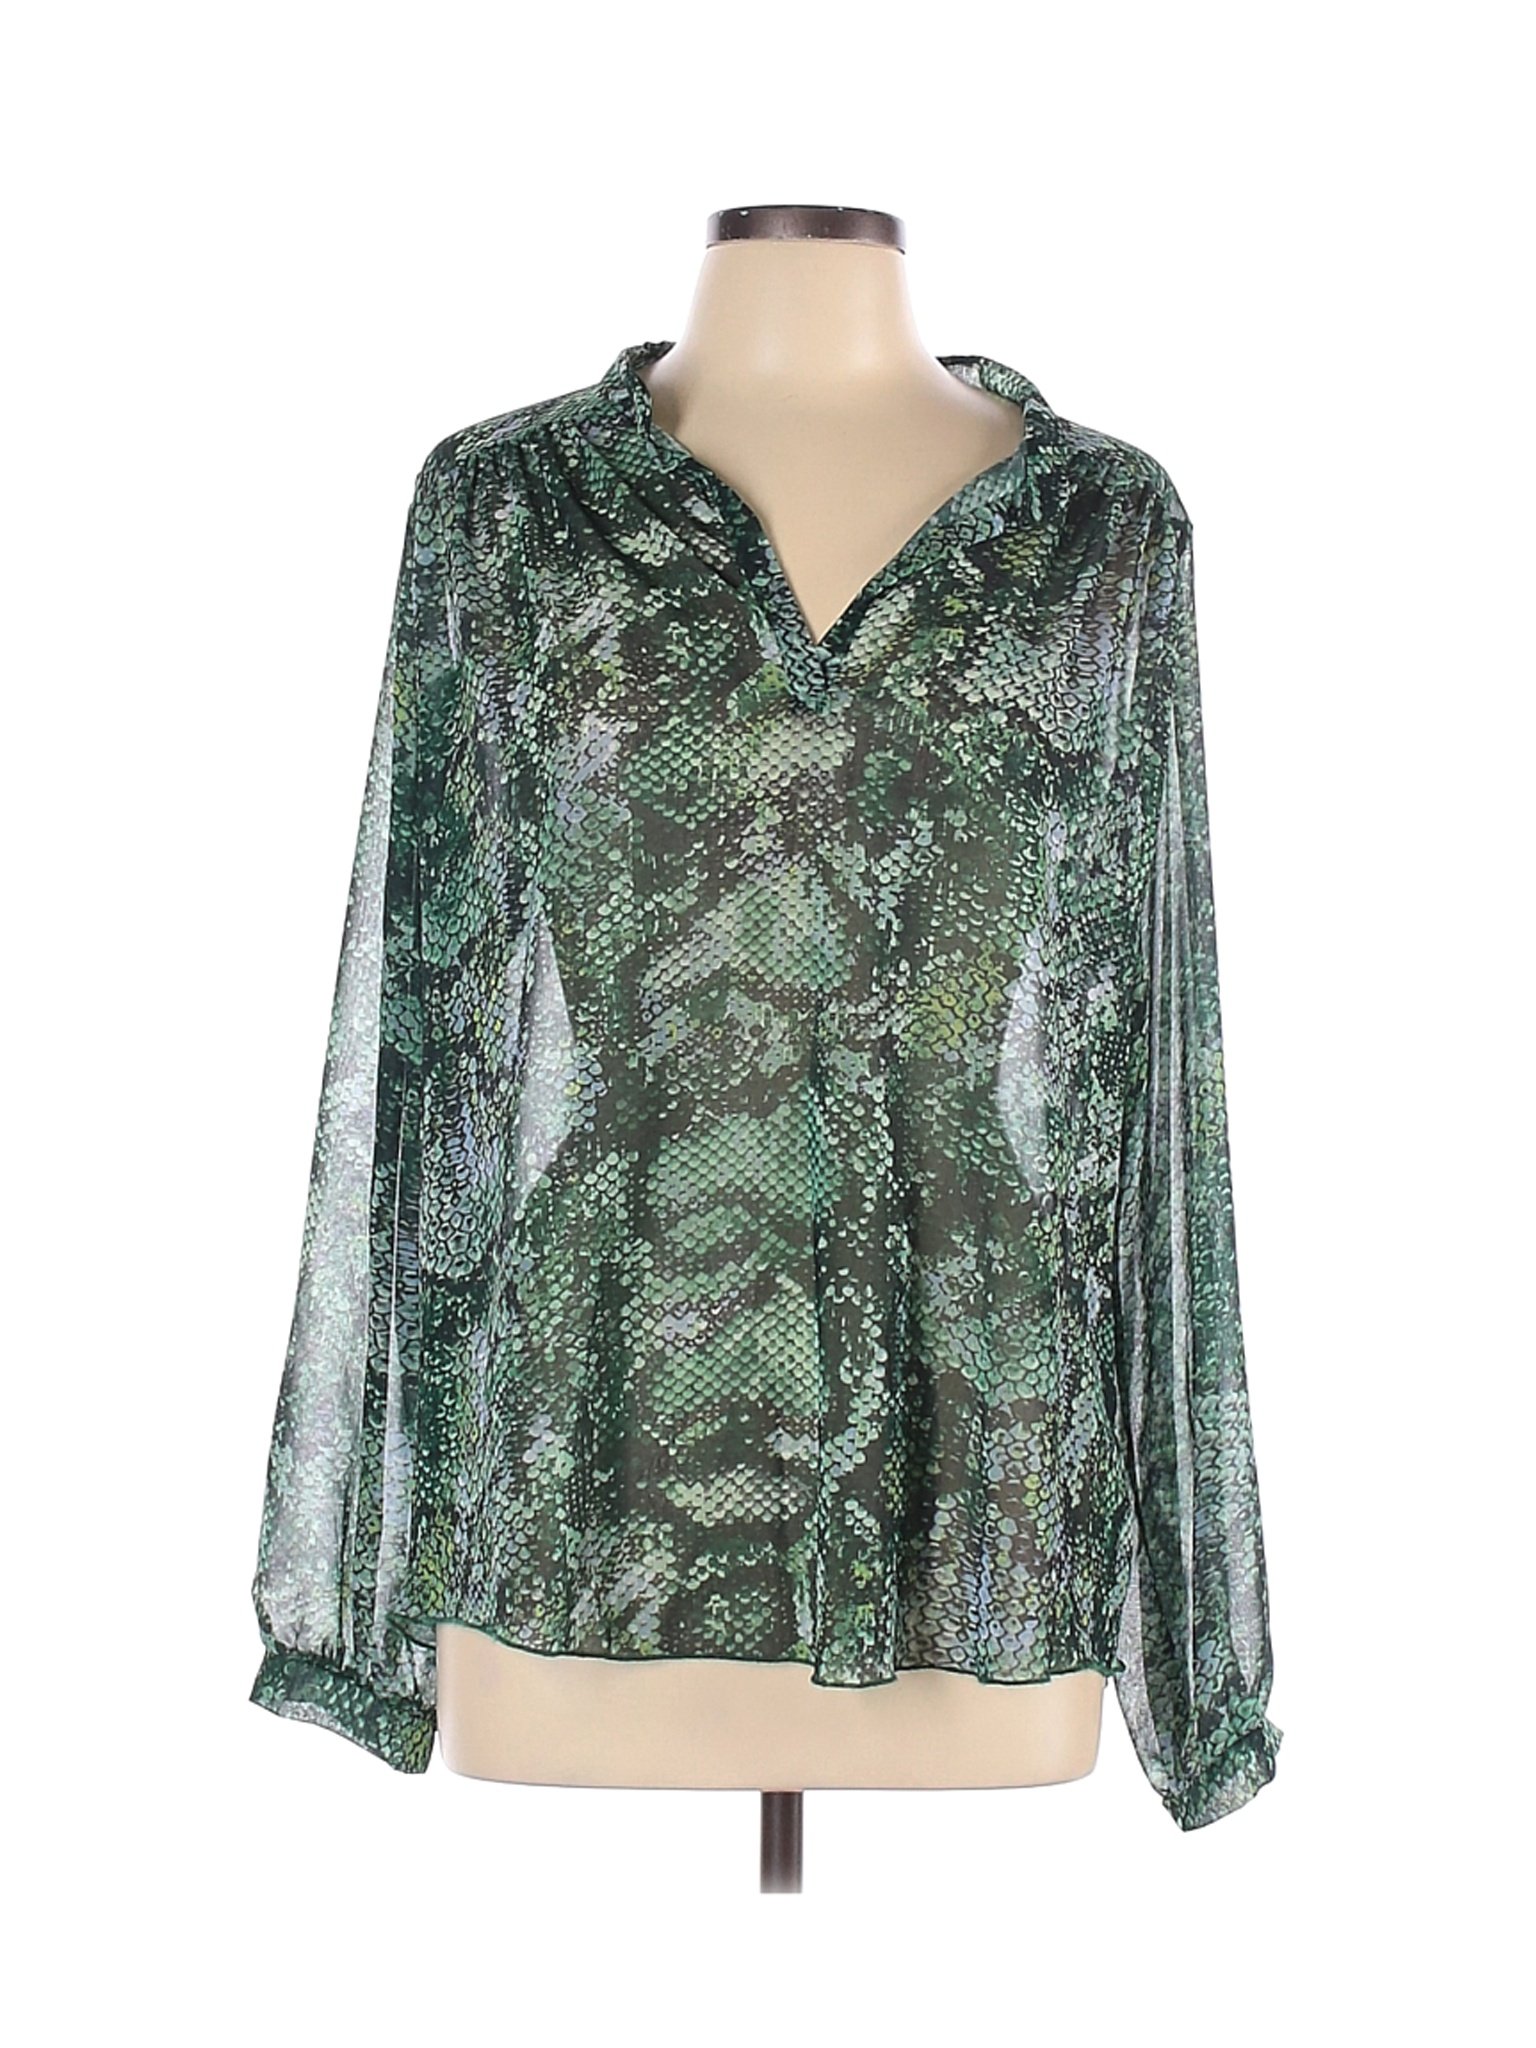 Sweet Pea U.S.A. Women Green Long Sleeve Blouse L | eBay